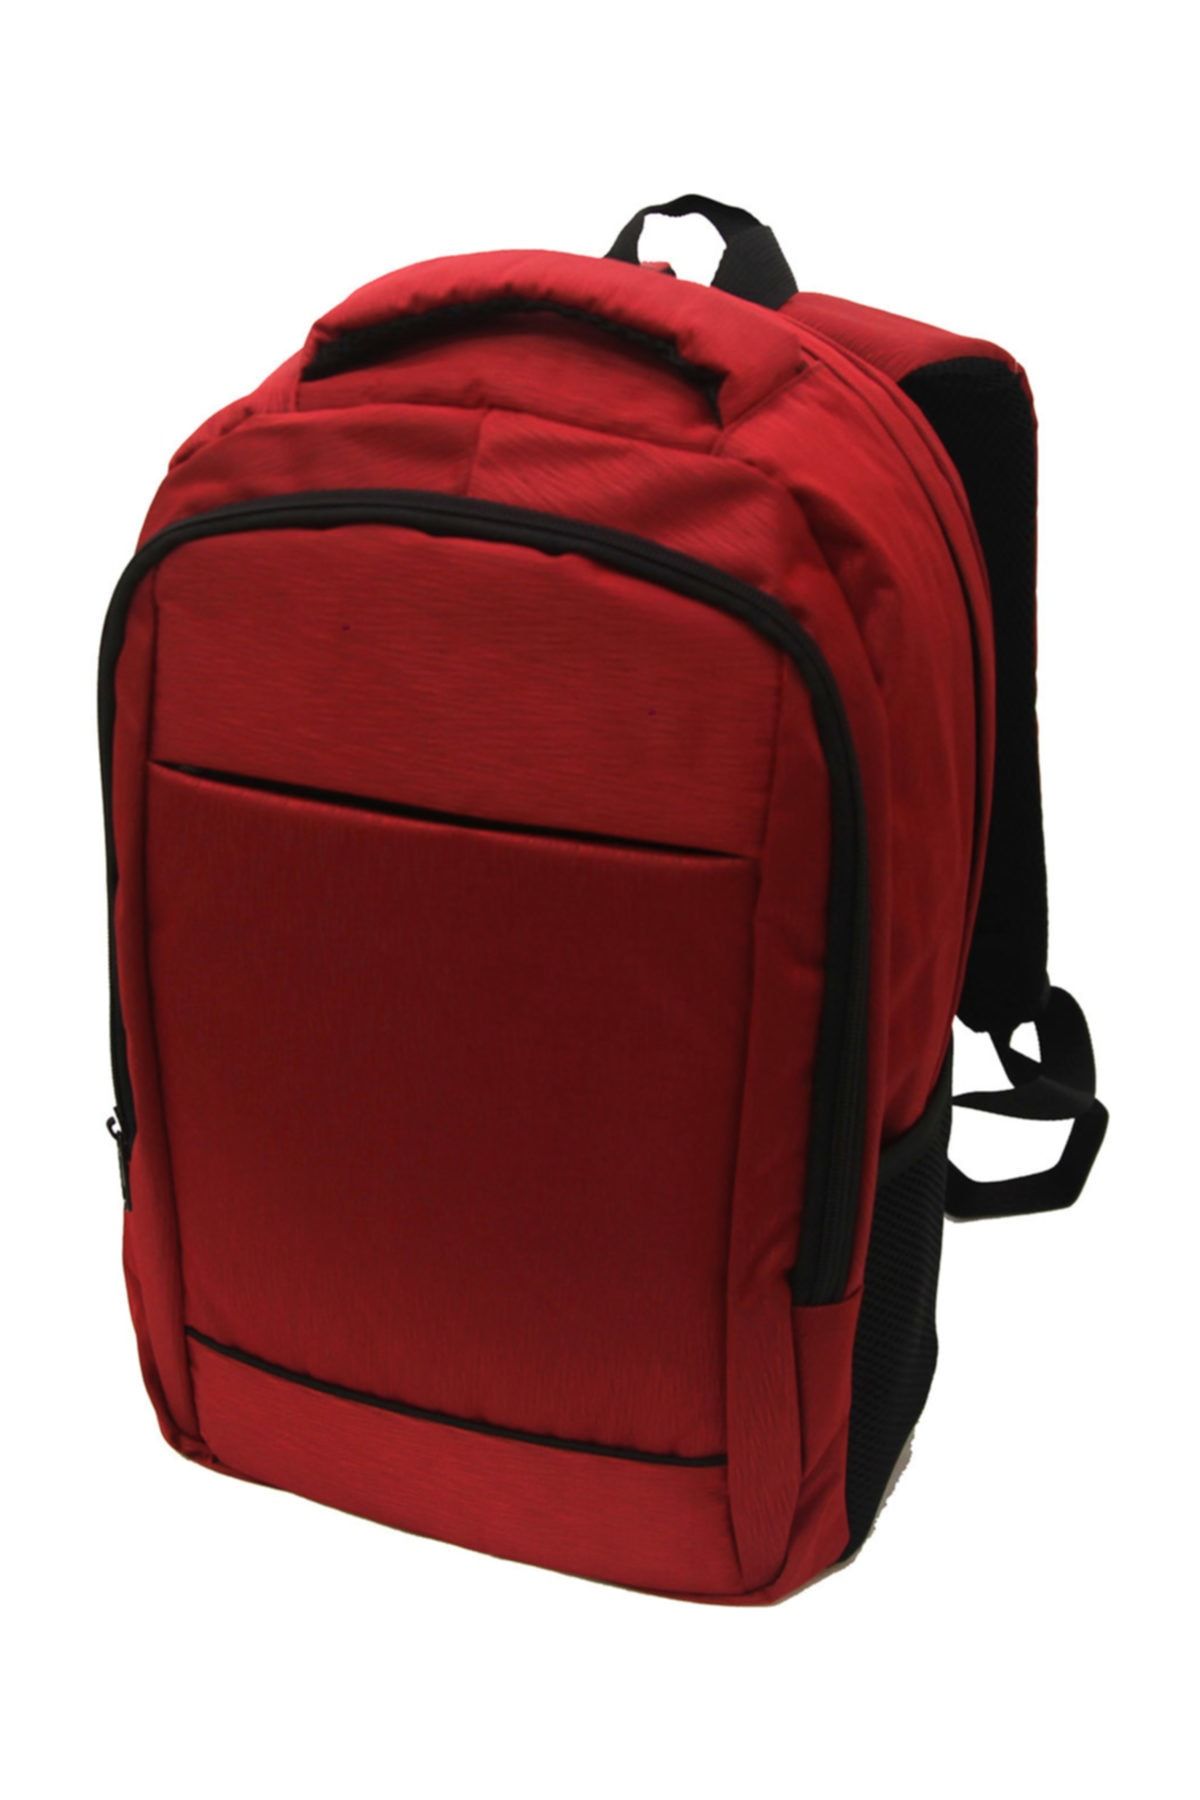 Beutel Backpack Bp-k1010 Kırmızı Spor Sırt Çantası